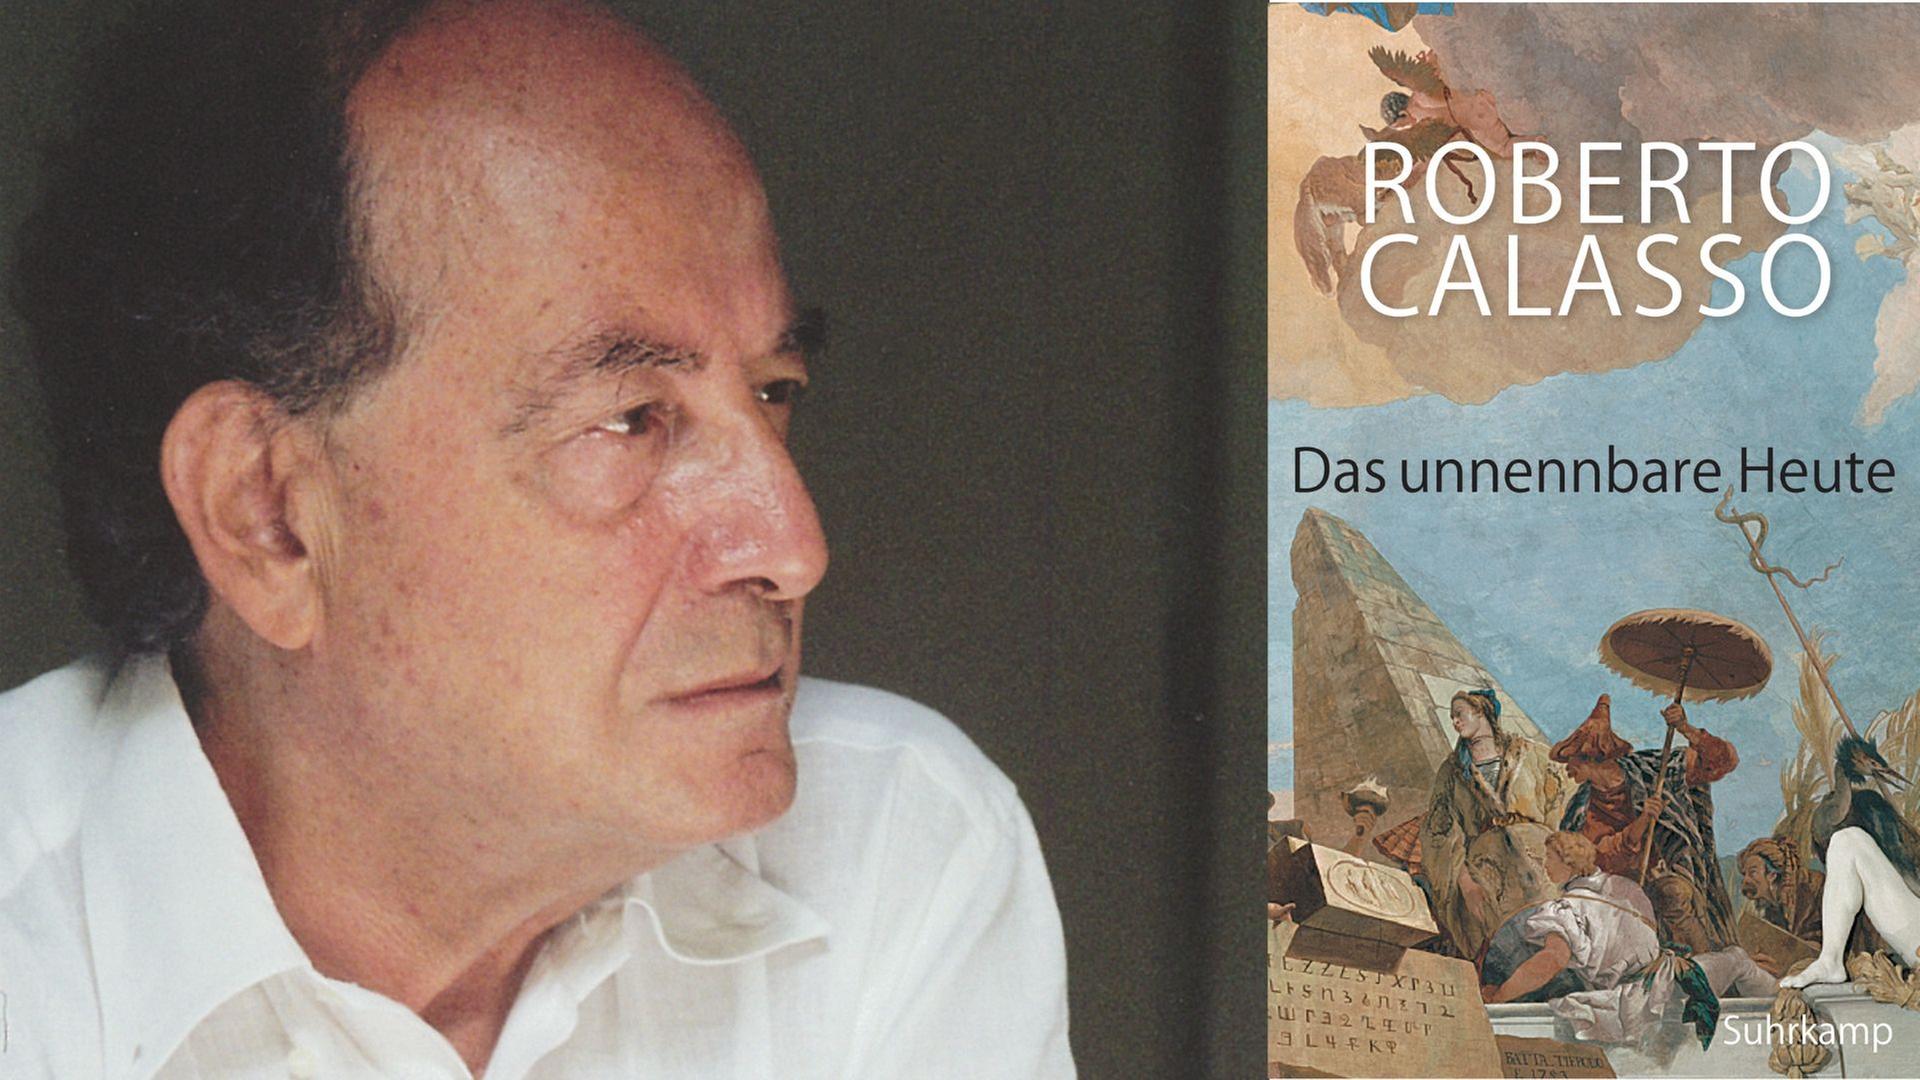 Zu sehen ist der Autor Roberto Calasso und sein Buch "Das unnennbare Heute"